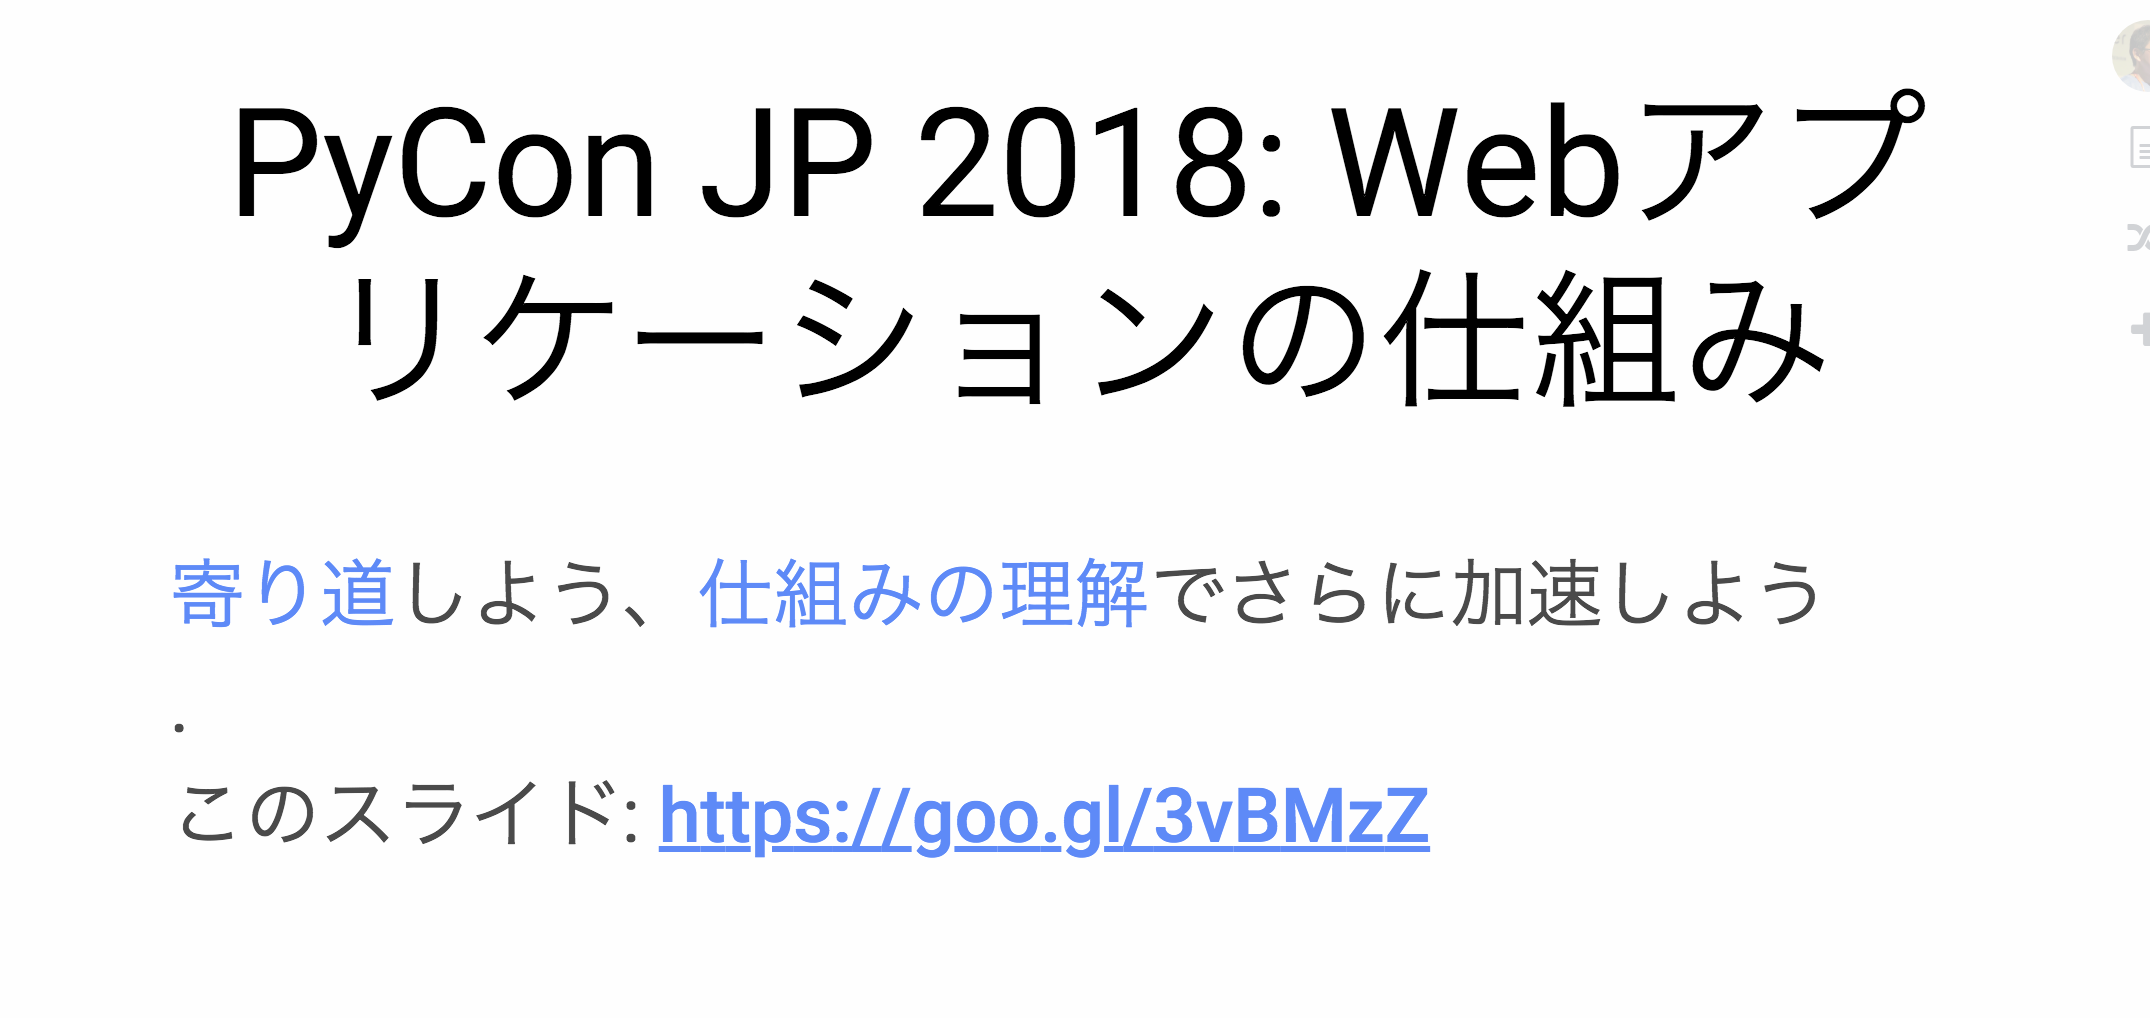 _images/pyconjp2018-talk-web-application-mechanism.png